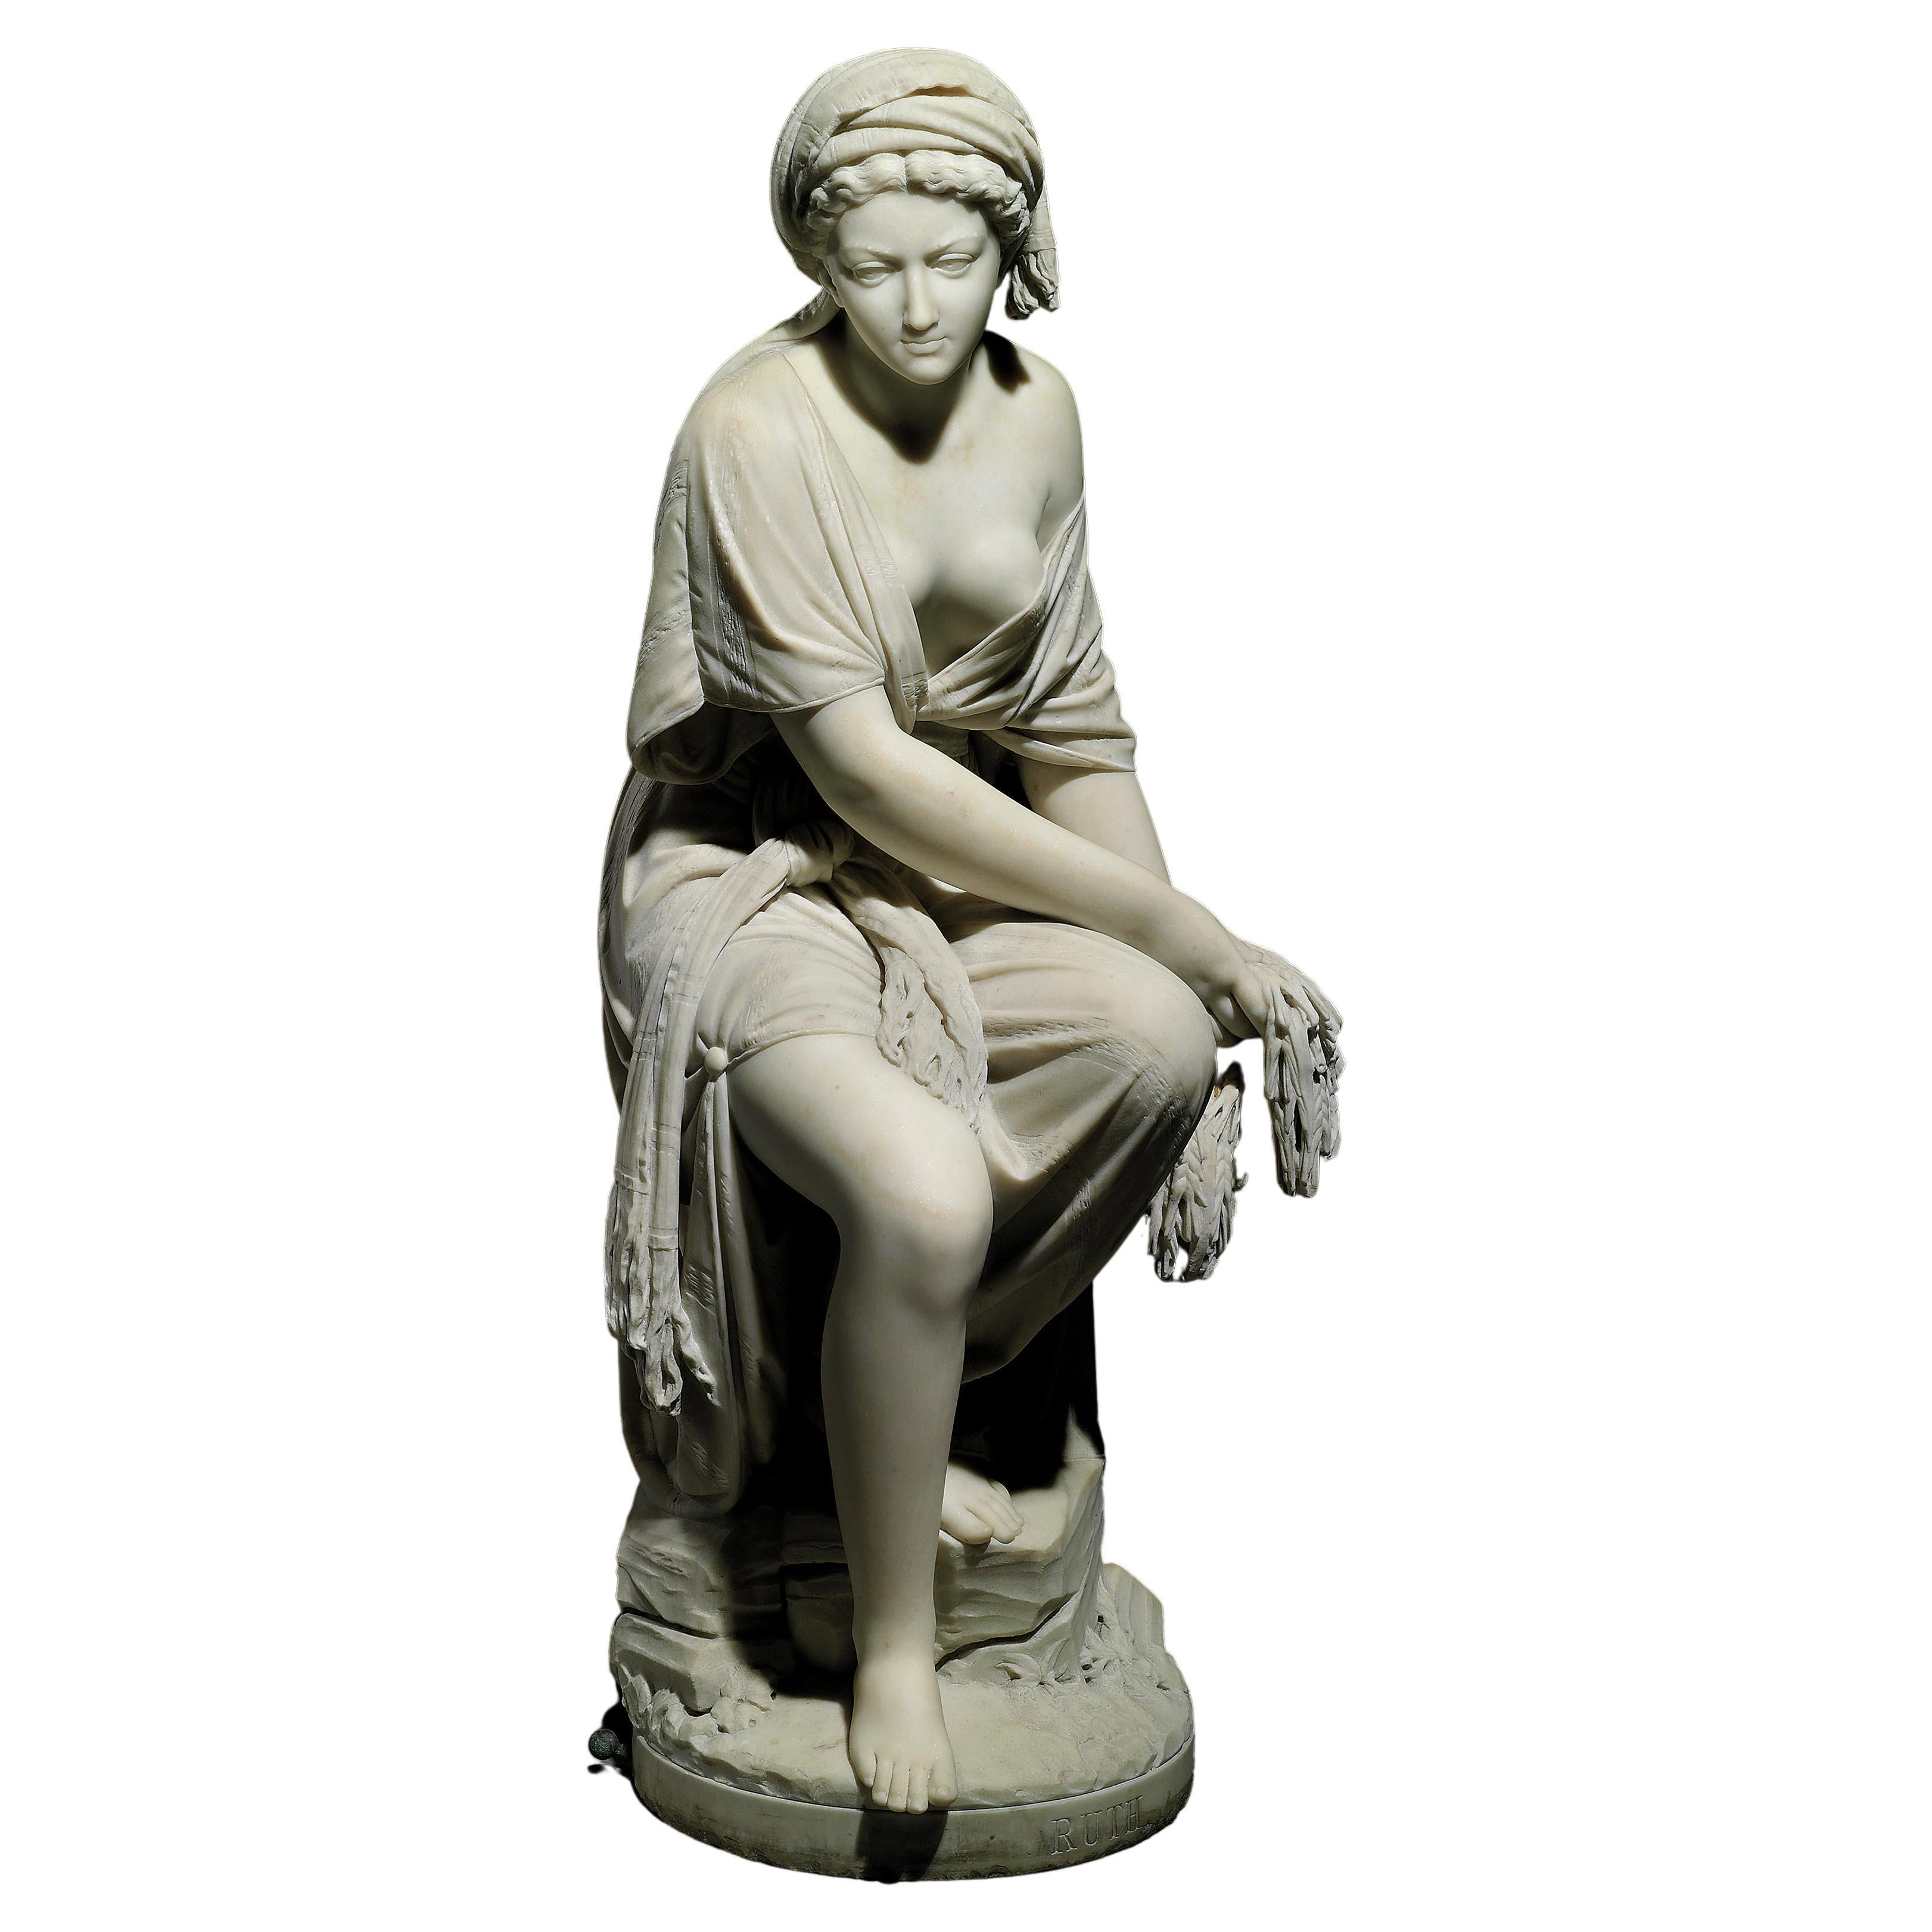 Sculptur Giovanni Battista Lombardi 1869 the Ruth